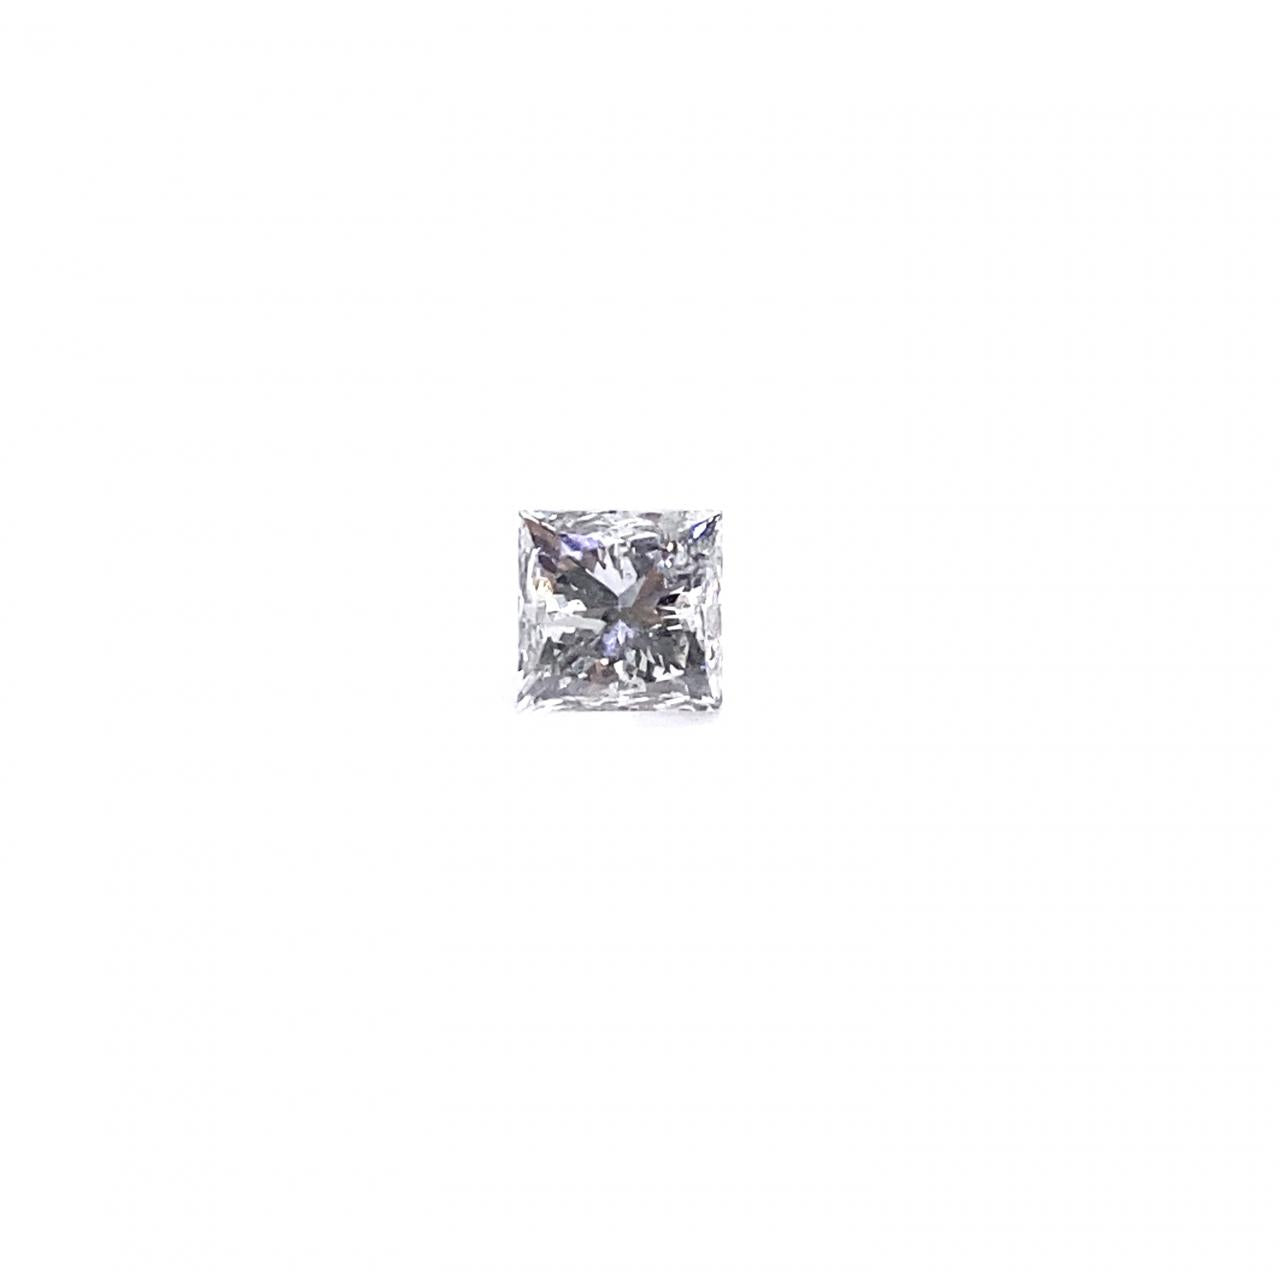 1.00 Carat Princess Cut Loose Diamond I Color